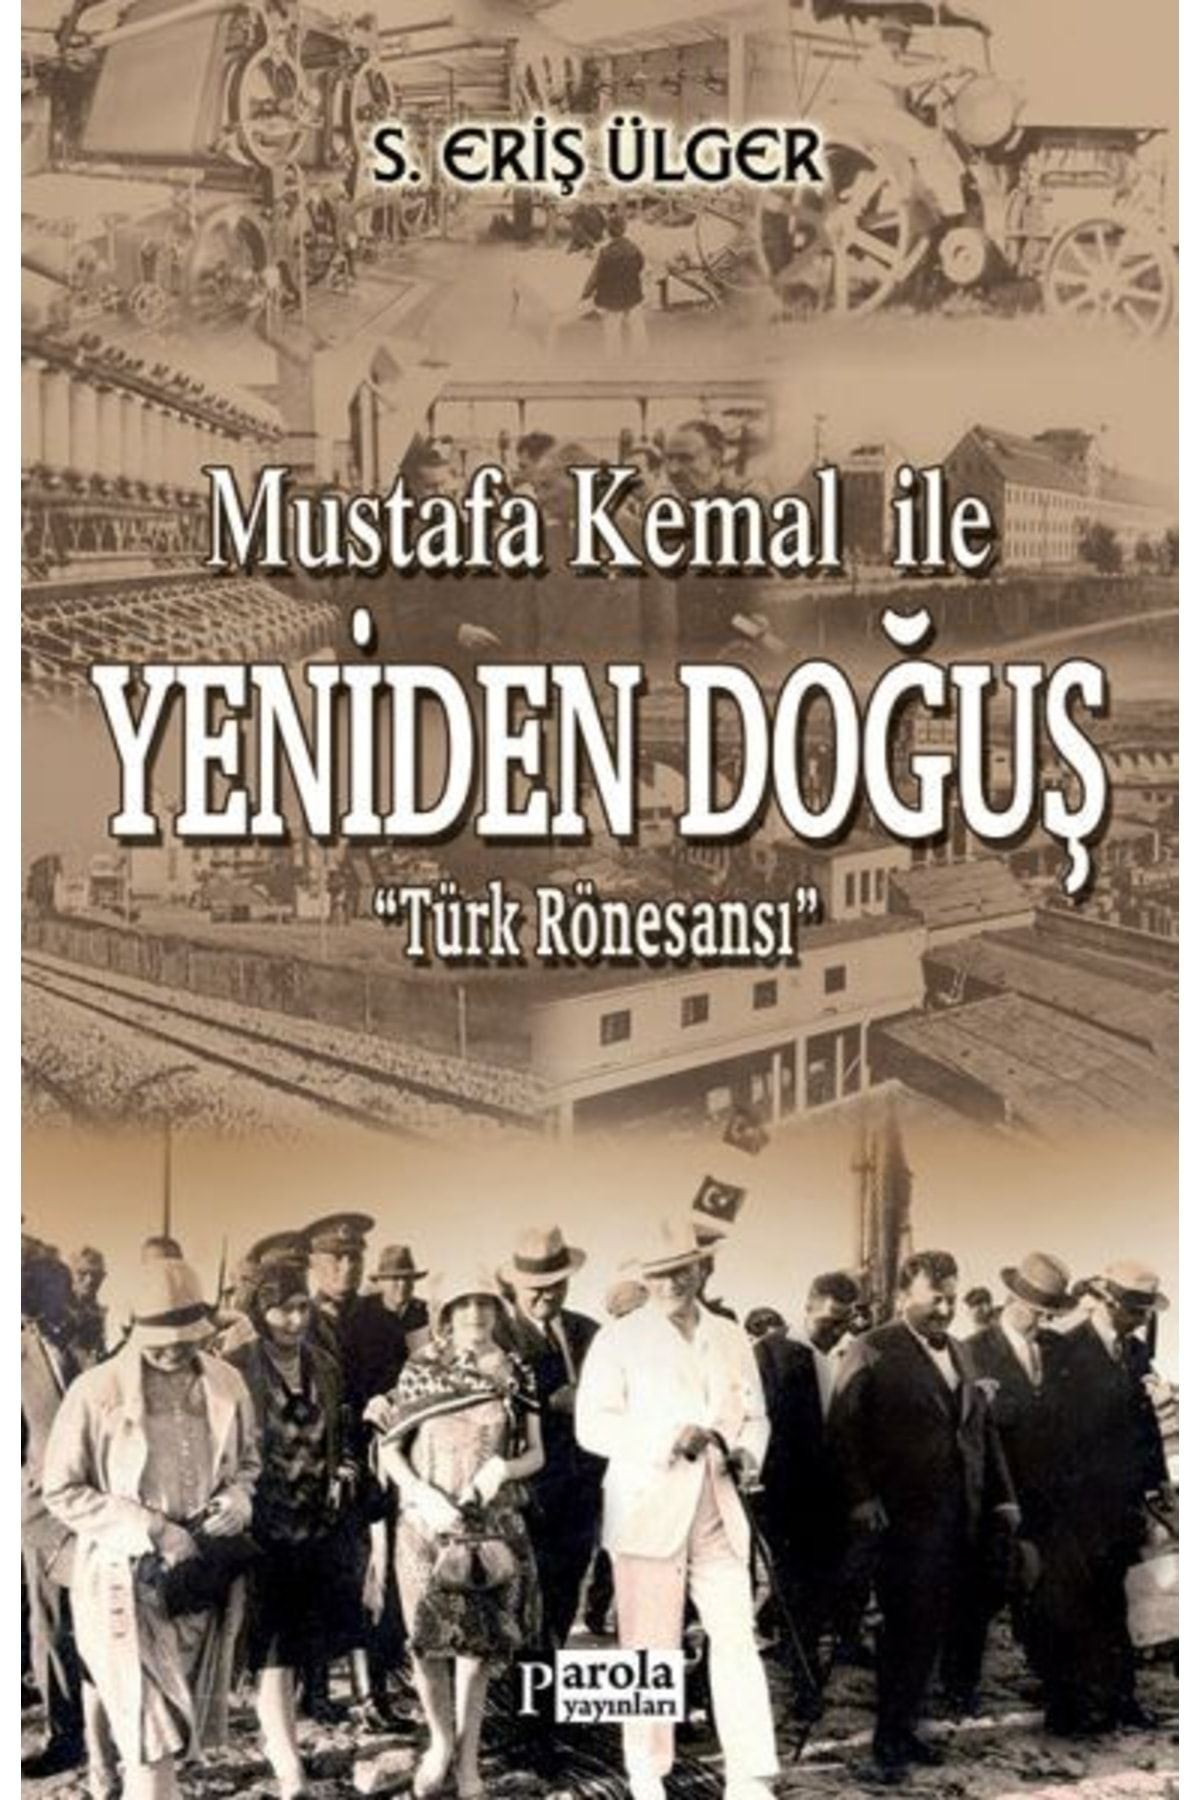 Genel Markalar Mustafa Kemal İle Yeniden Doğuş kitabı - S. Eriş Ülger - Parola Yayınları